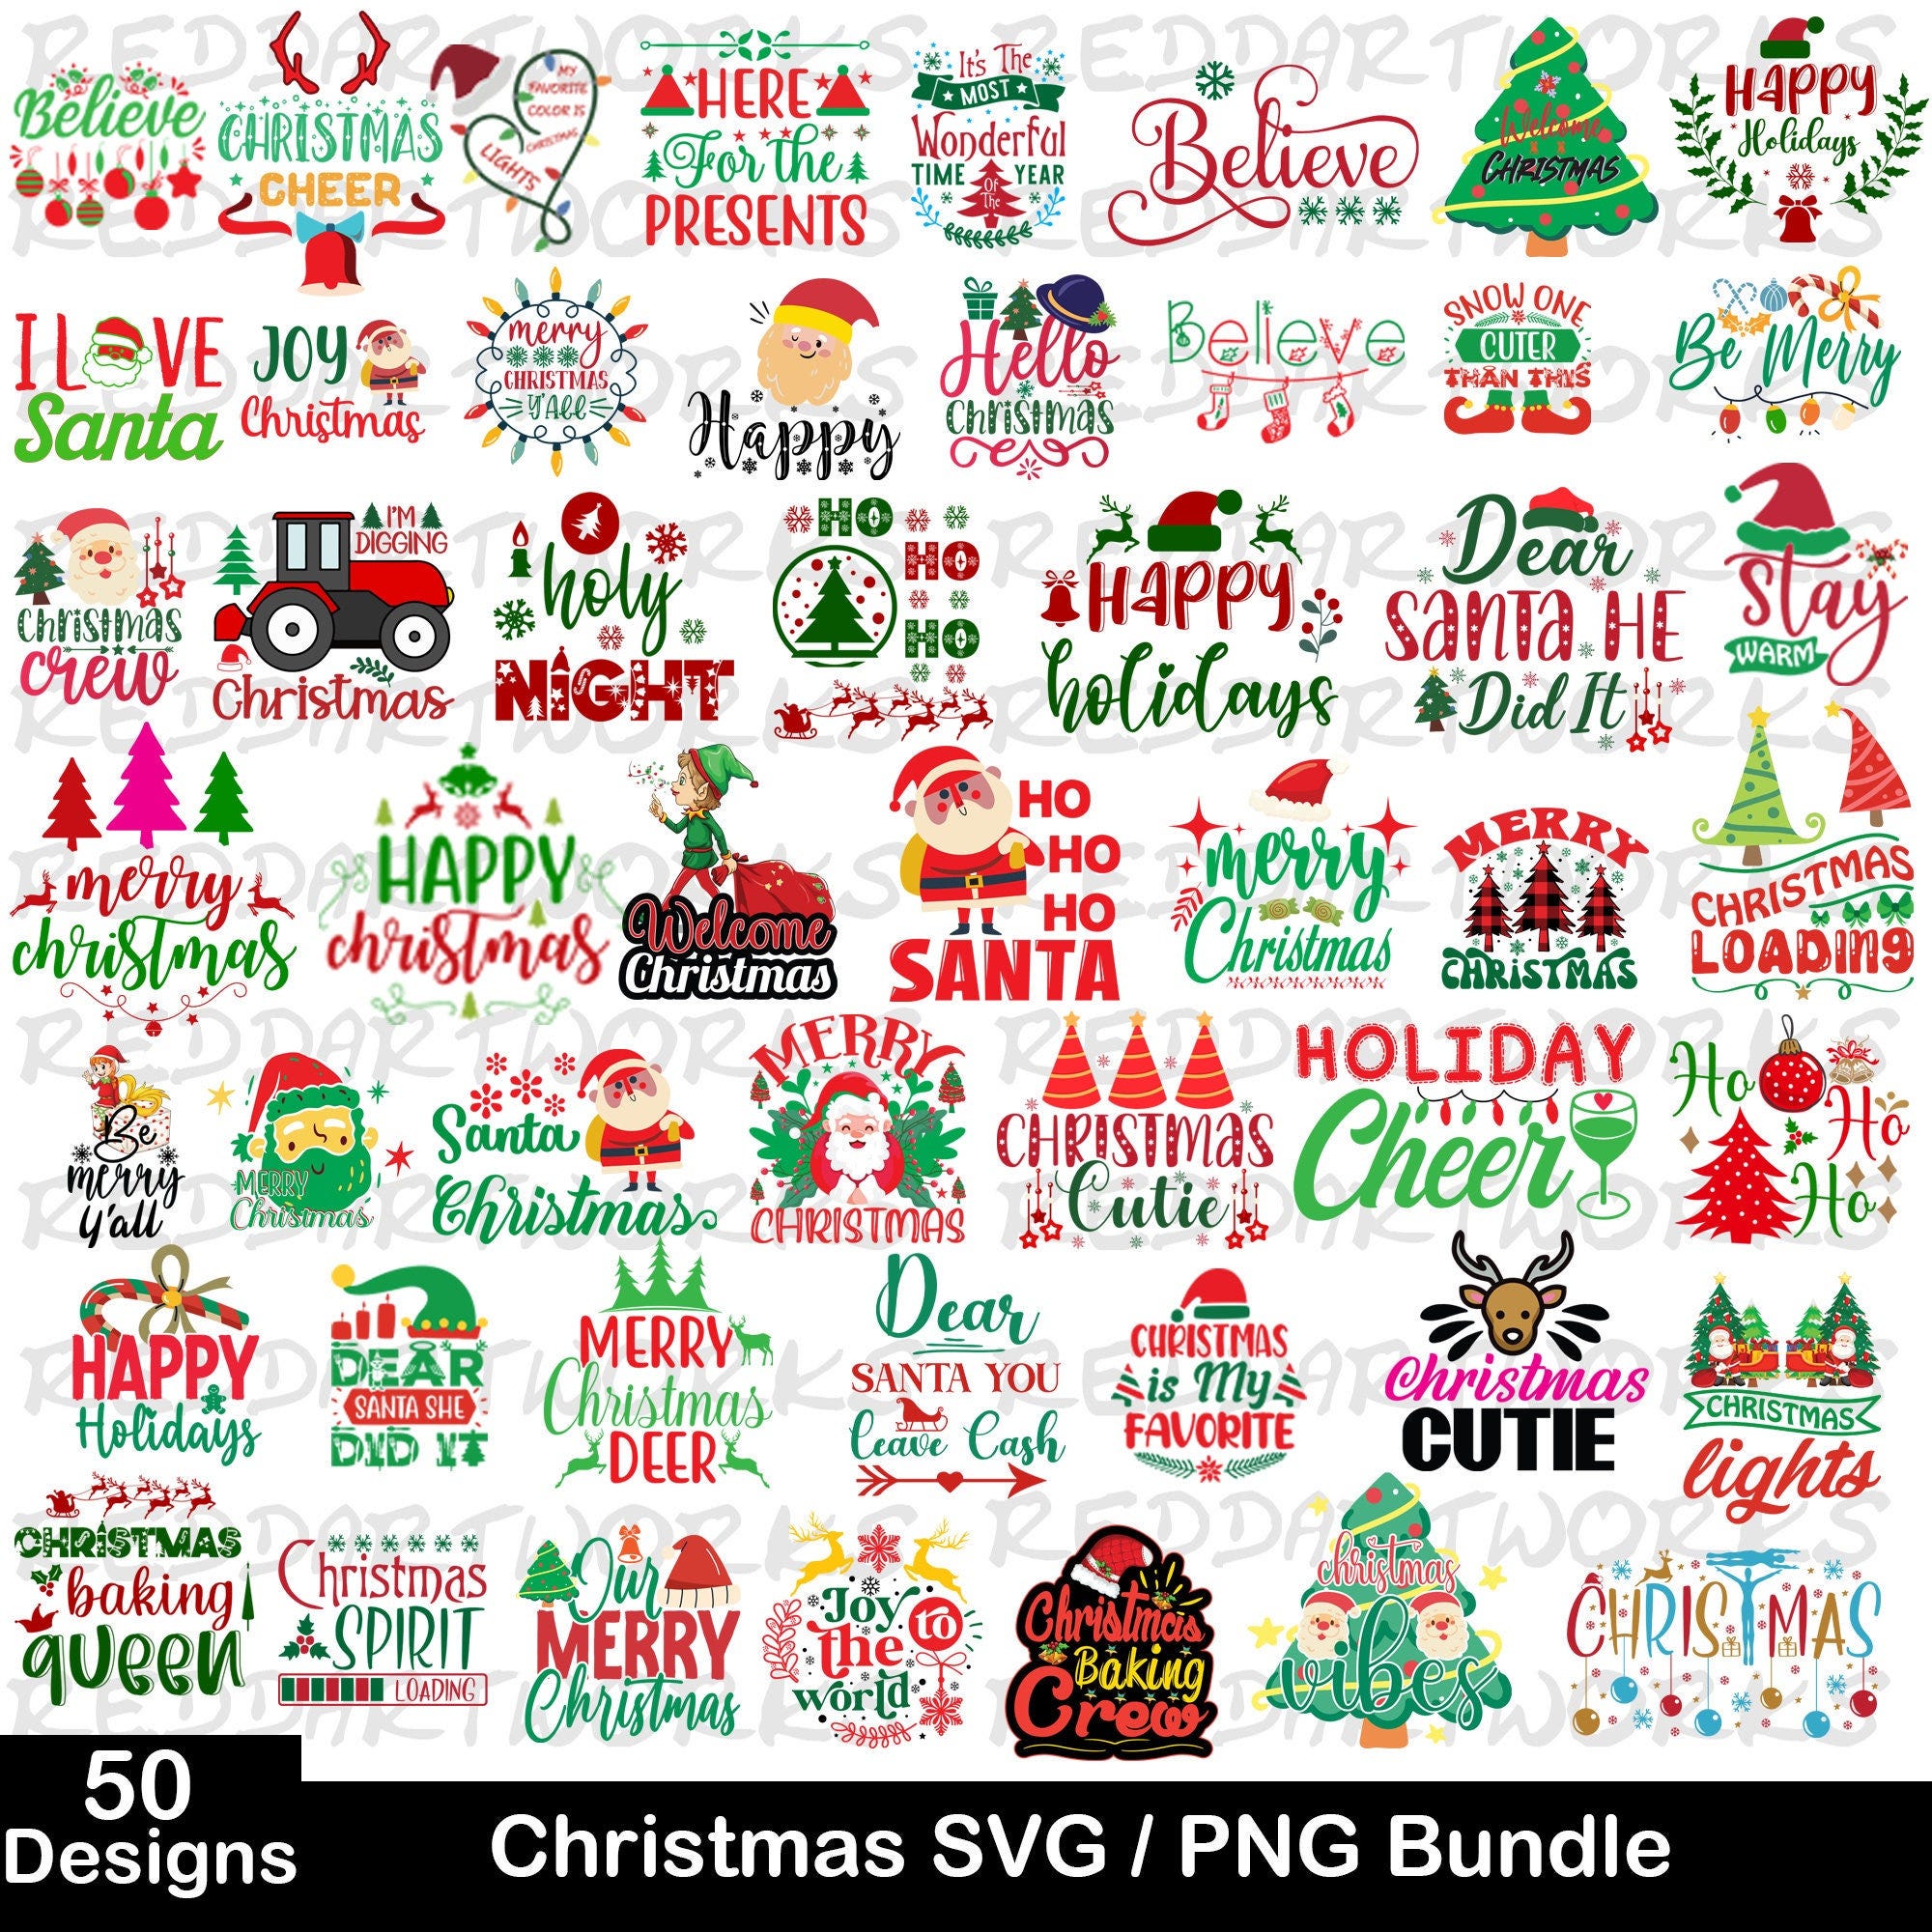 Christmas SVG Bundle, 50 Designs Christmas SVG Bundle, Christmas Tree SVG, Merry Christmas Svg, Funny Christmas Svg, Christmas Lights Svg